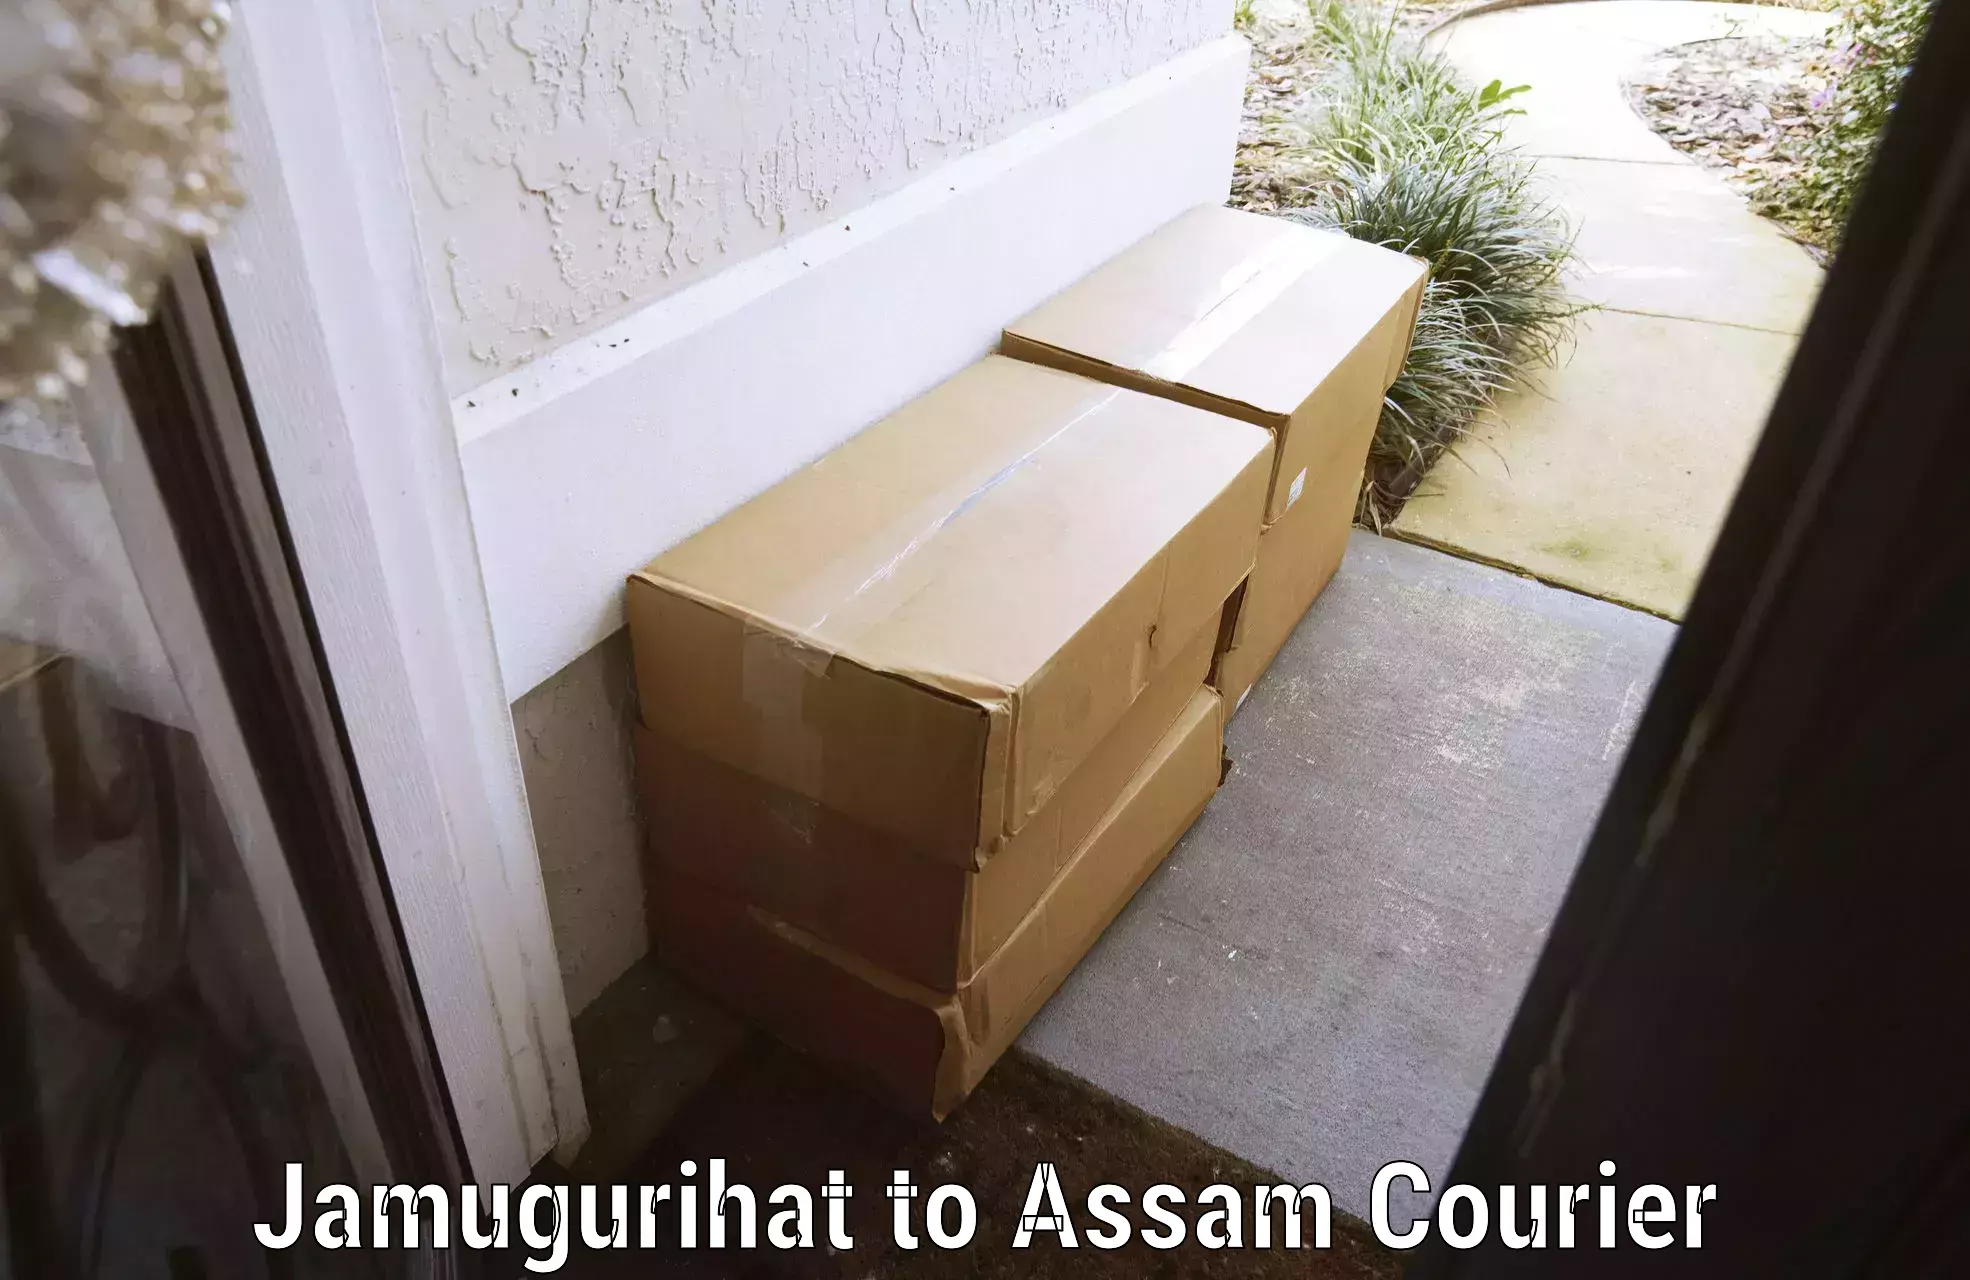 Baggage transport innovation Jamugurihat to Assam